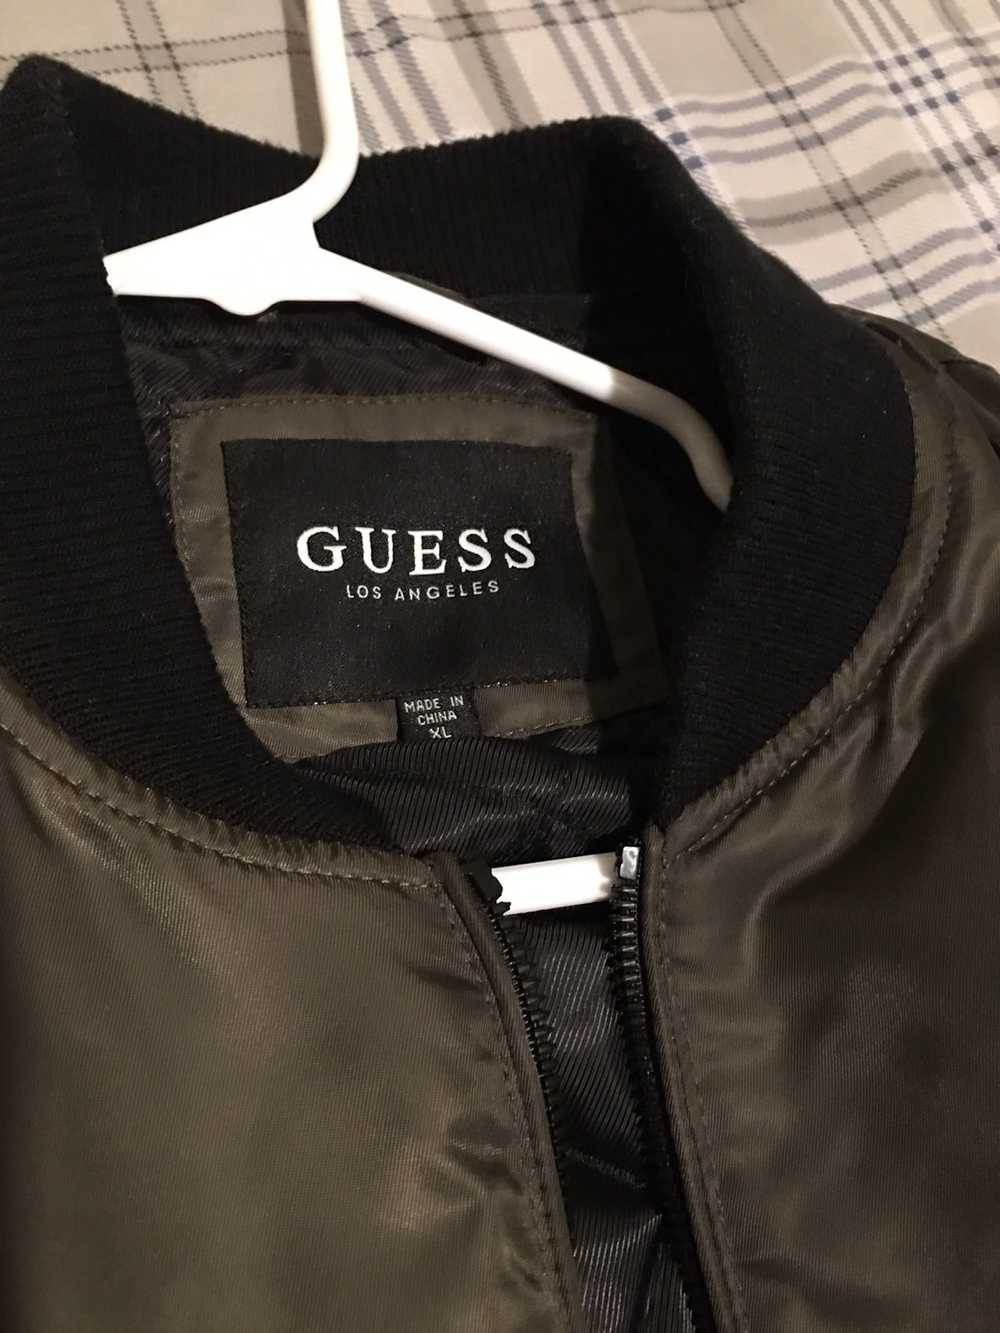 Guess Guess jacket - image 1